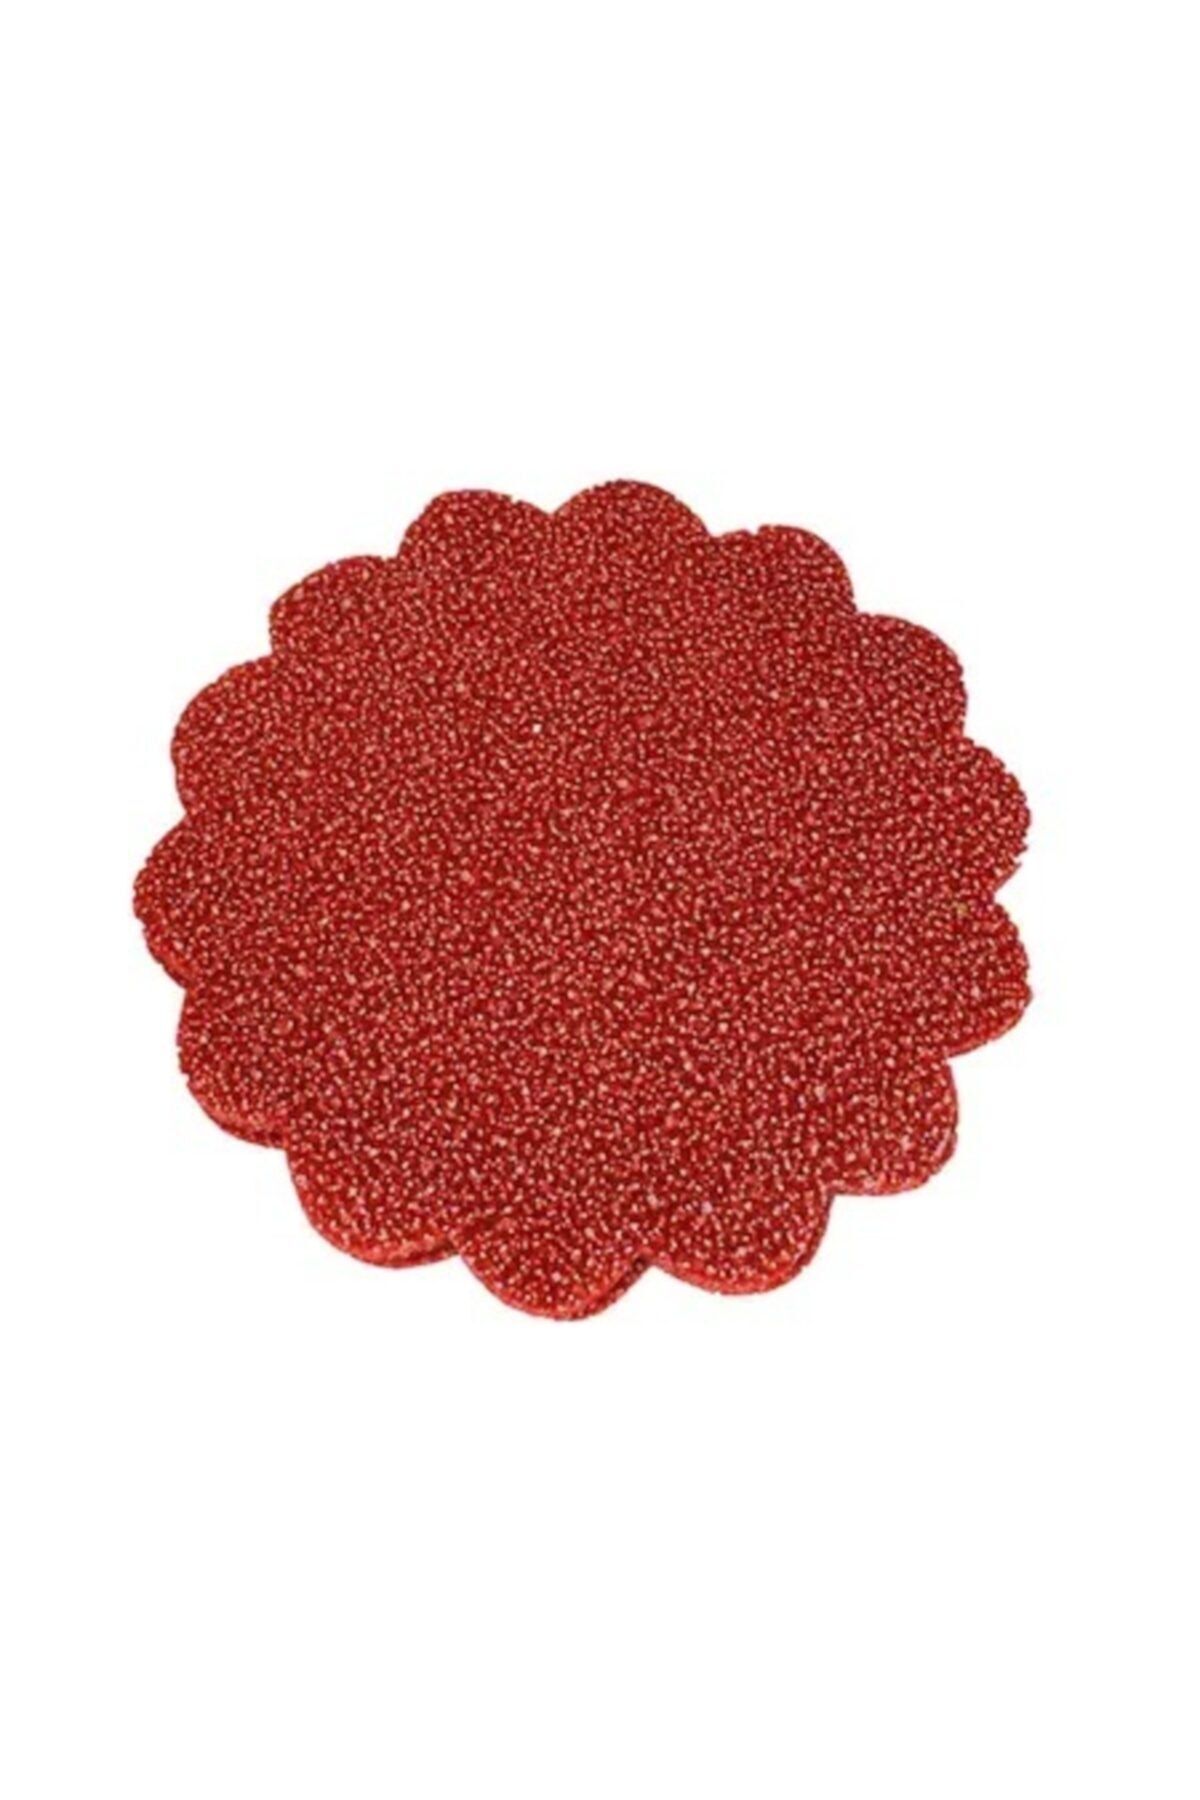 Evsay Karlı Simli Süsleme Tülü 22cm Çapında 100lü Kırmızı